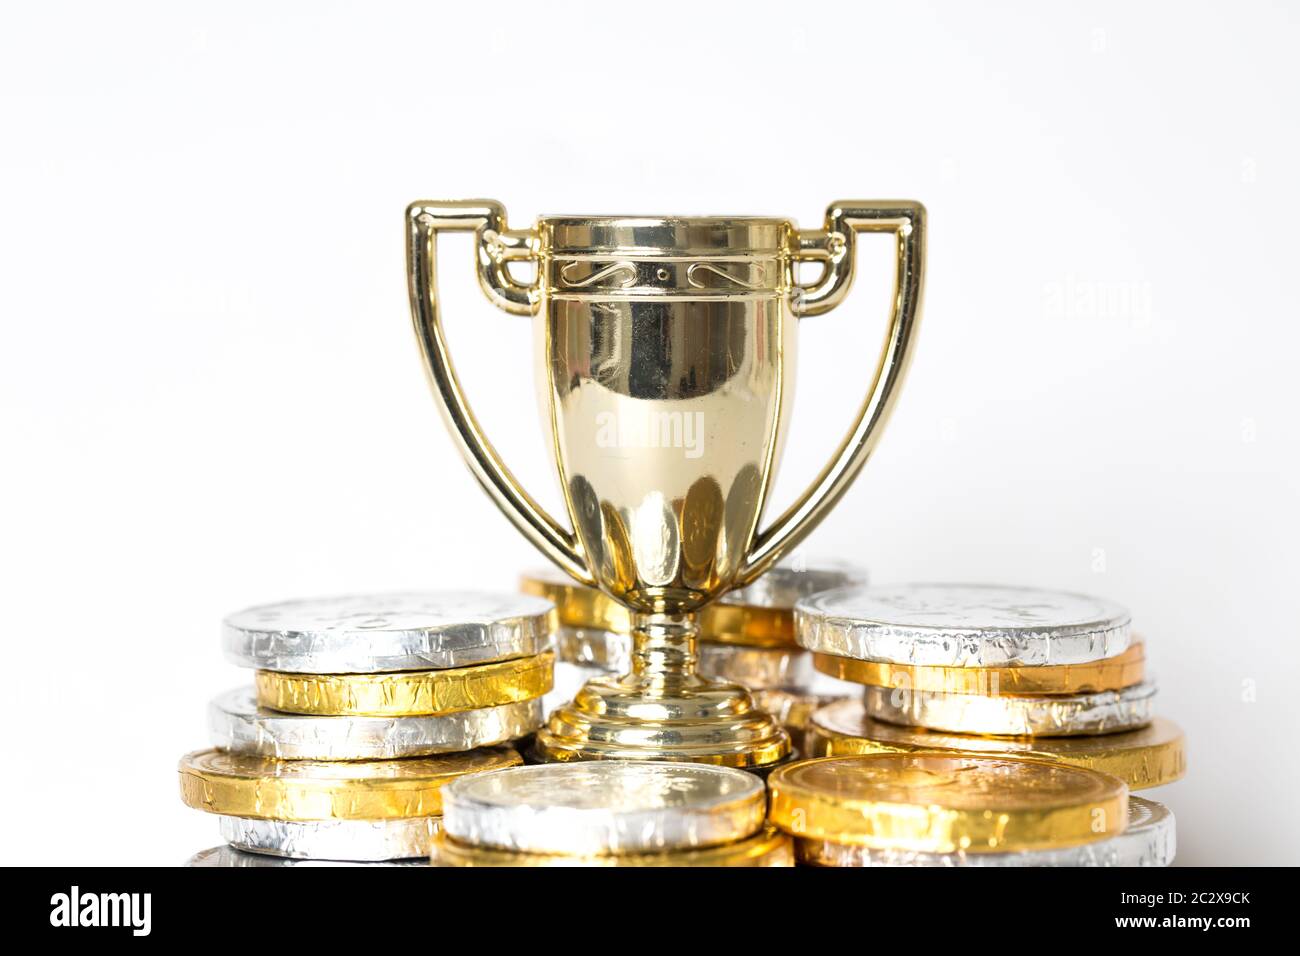 Un concept de réussite ou de victoire avec un trophée d'or ou une tasse entourée de pièces d'or et d'argent sous forme de prix Banque D'Images